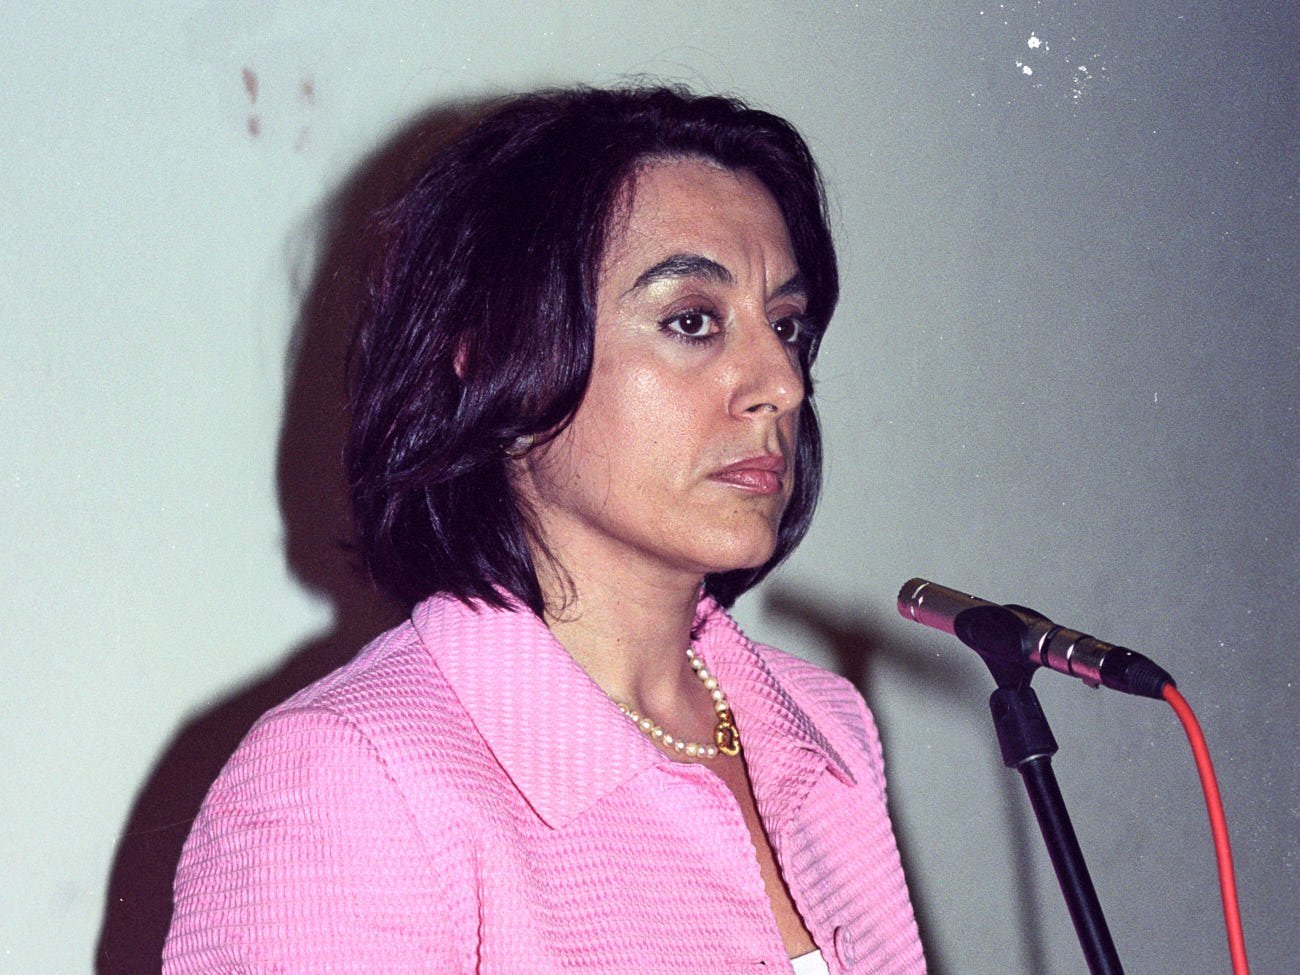 Premios Lois Peña Novo 2004